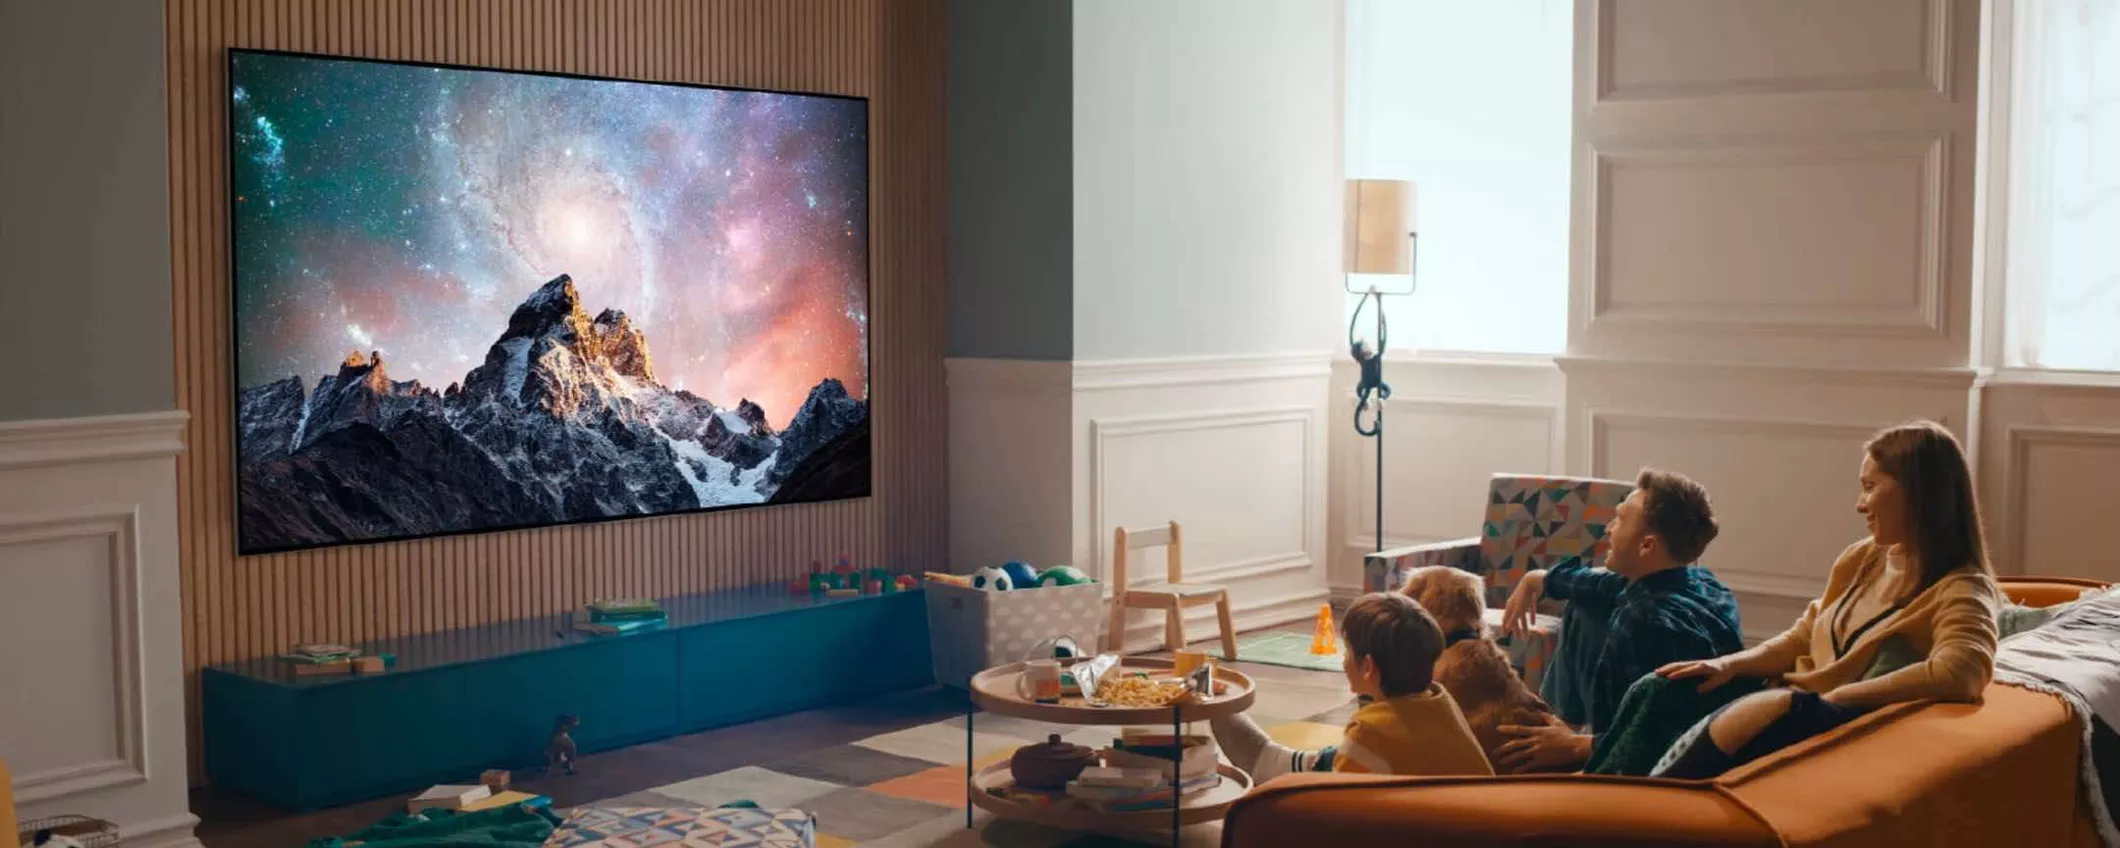 LG QNED 50 pollici in offerta a 409€ su Amazon: è la Smart TV da avere